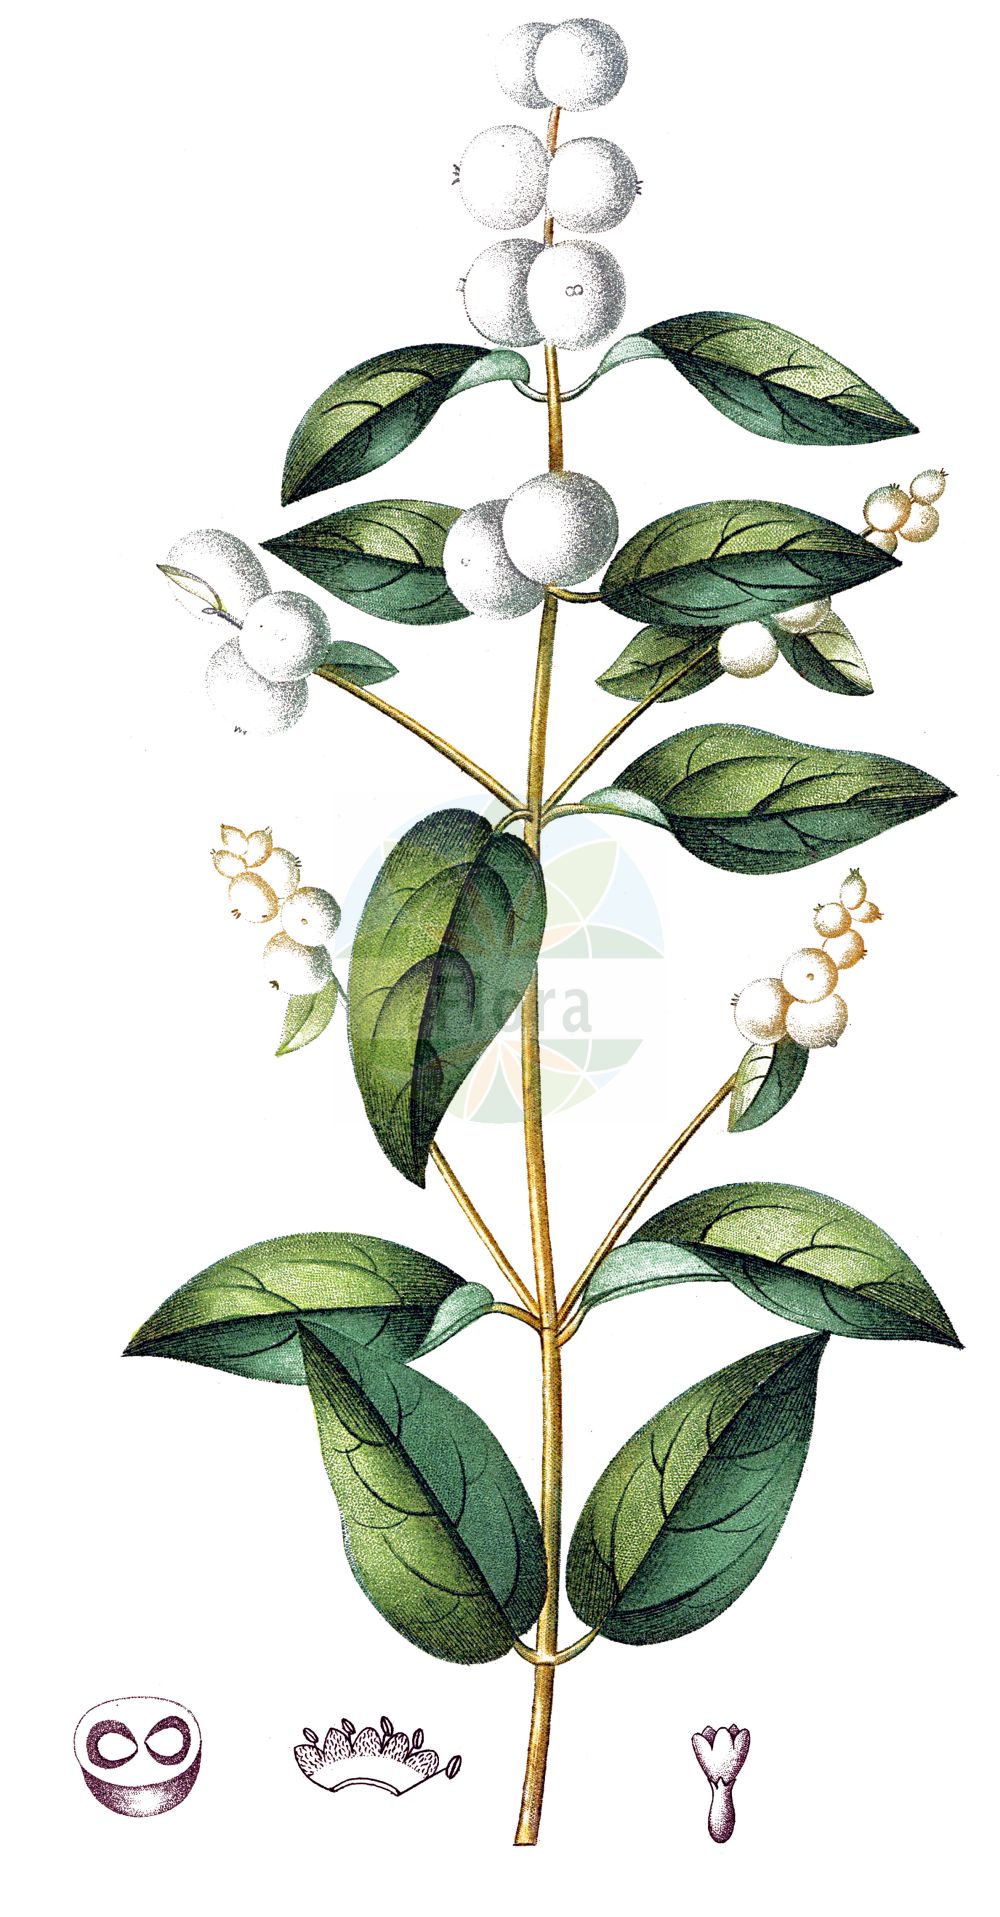 Historische Abbildung von Symphoricarpos albus (Gewöhnliche Schneebeere - Snowberry). Das Bild zeigt Blatt, Bluete, Frucht und Same. ---- Historical Drawing of Symphoricarpos albus (Gewöhnliche Schneebeere - Snowberry). The image is showing leaf, flower, fruit and seed.(Symphoricarpos albus,Gewöhnliche Schneebeere,Snowberry,Symphoricarpos albus,Symphoricarpos racemosus,Symphoricarpos rivularis,Vaccinium album,Gewoehnliche Schneebeere,Knackbeere,Knallerbse,Snowberry,Common Snowberry,Symphoricarpos,Schneebeere,Snowberry,Caprifoliaceae,Geißblattgewächse,Honeysuckle family,Blatt,Bluete,Frucht,Same,leaf,flower,fruit,seed,de Saint-Hilaire (1824a))